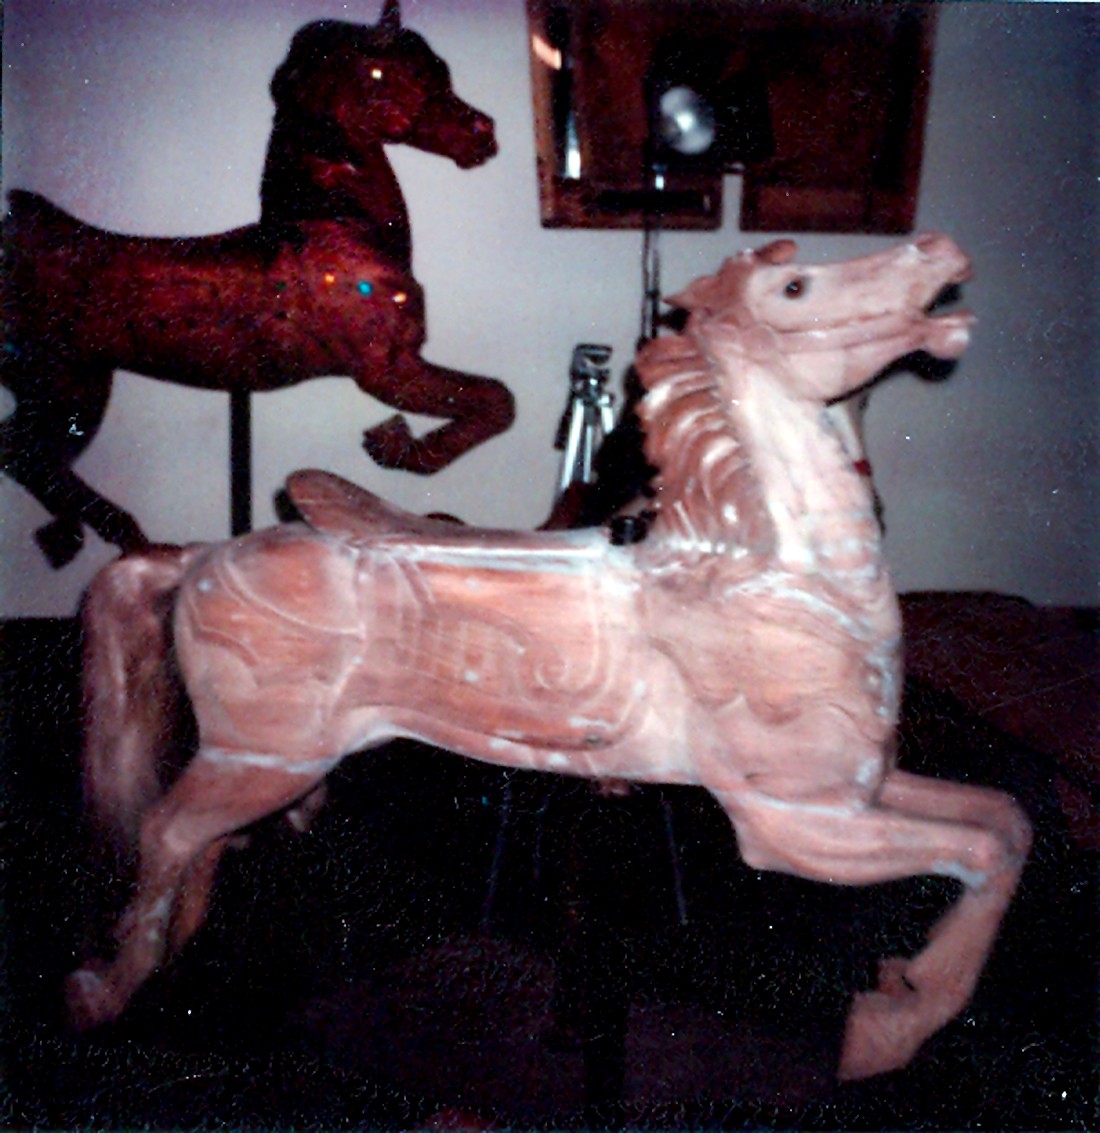 Fraley-Redbug-Studio-carousel-horse-restoration-1980-visit_014